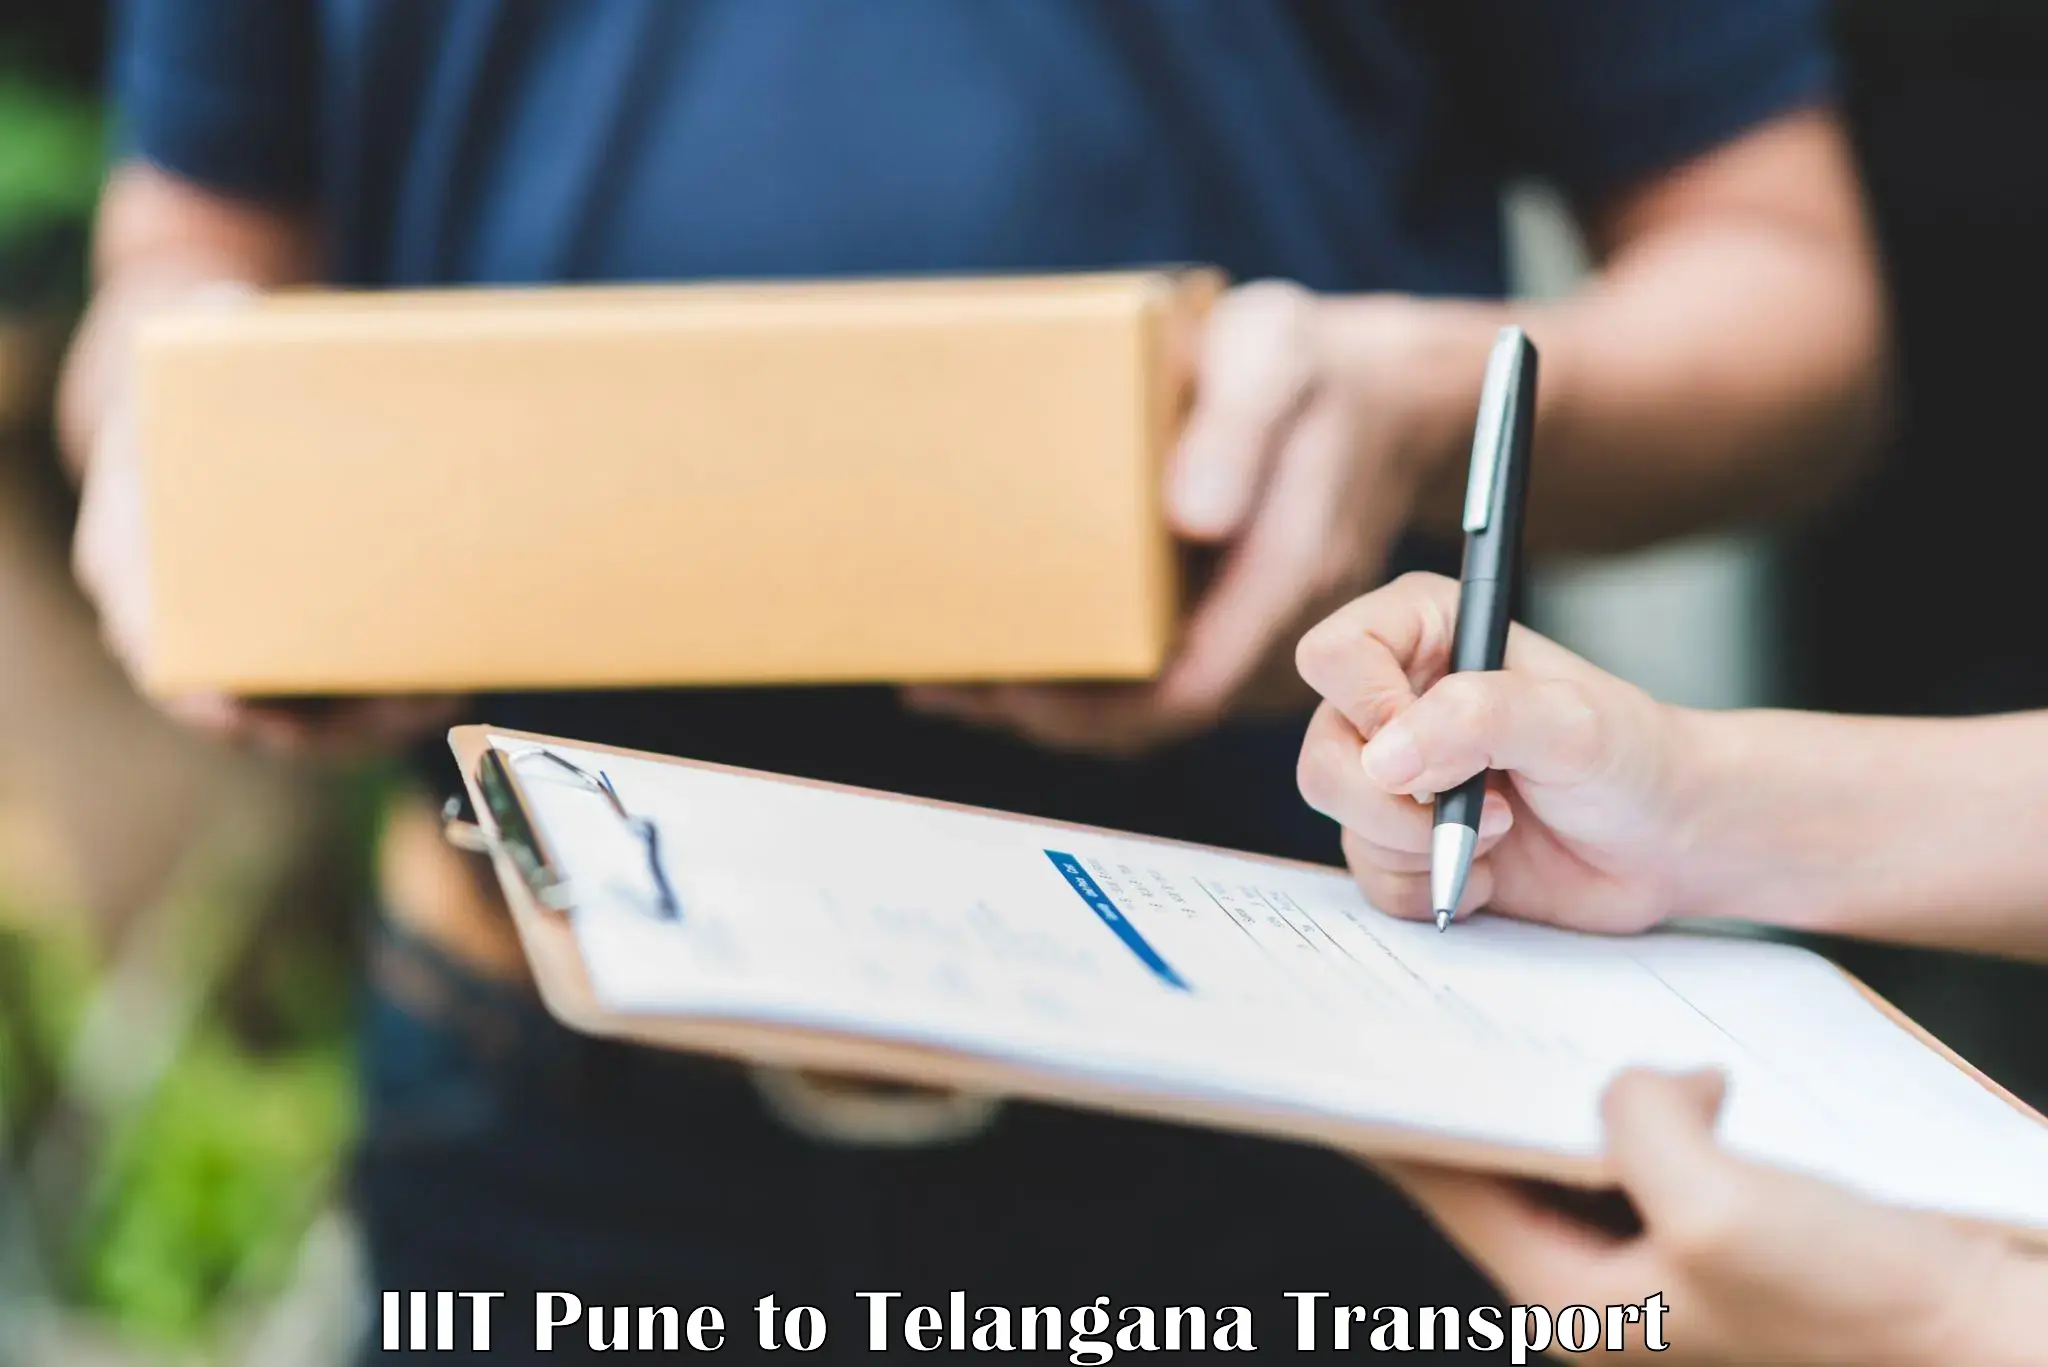 Online transport IIIT Pune to Hyderabad